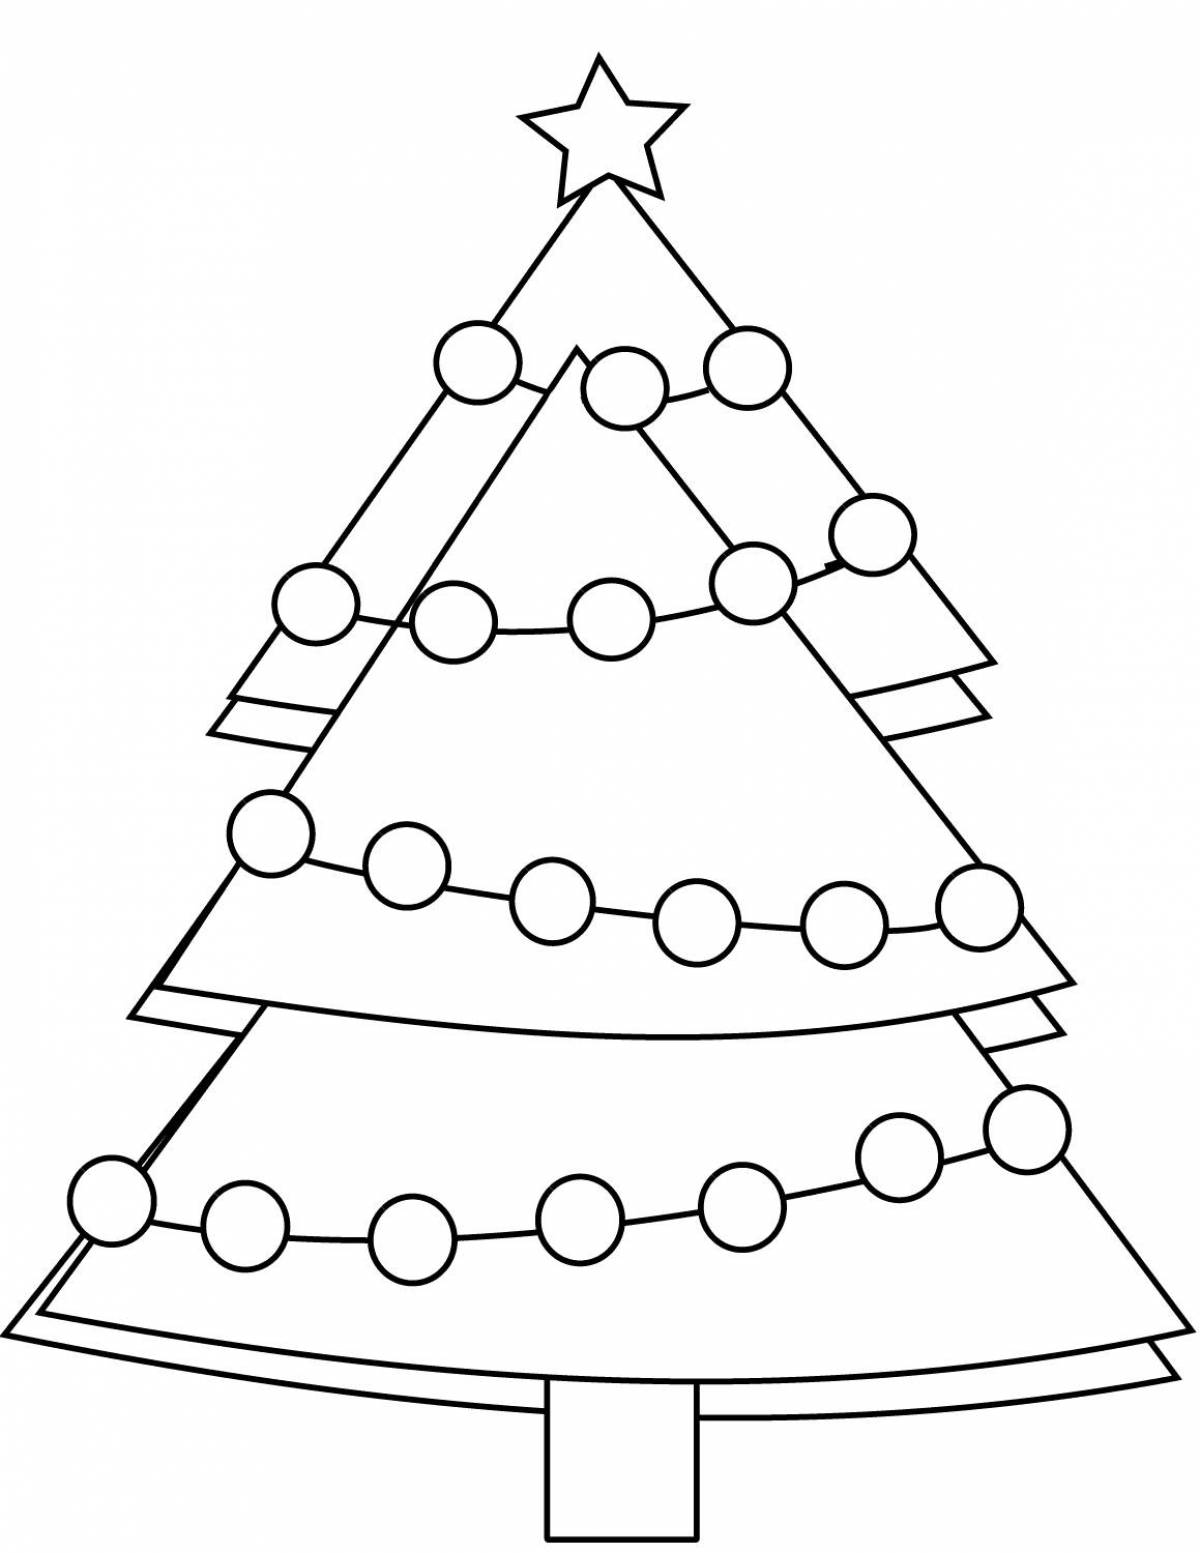 Раскраска милая рождественская елка для детей 3-4 лет